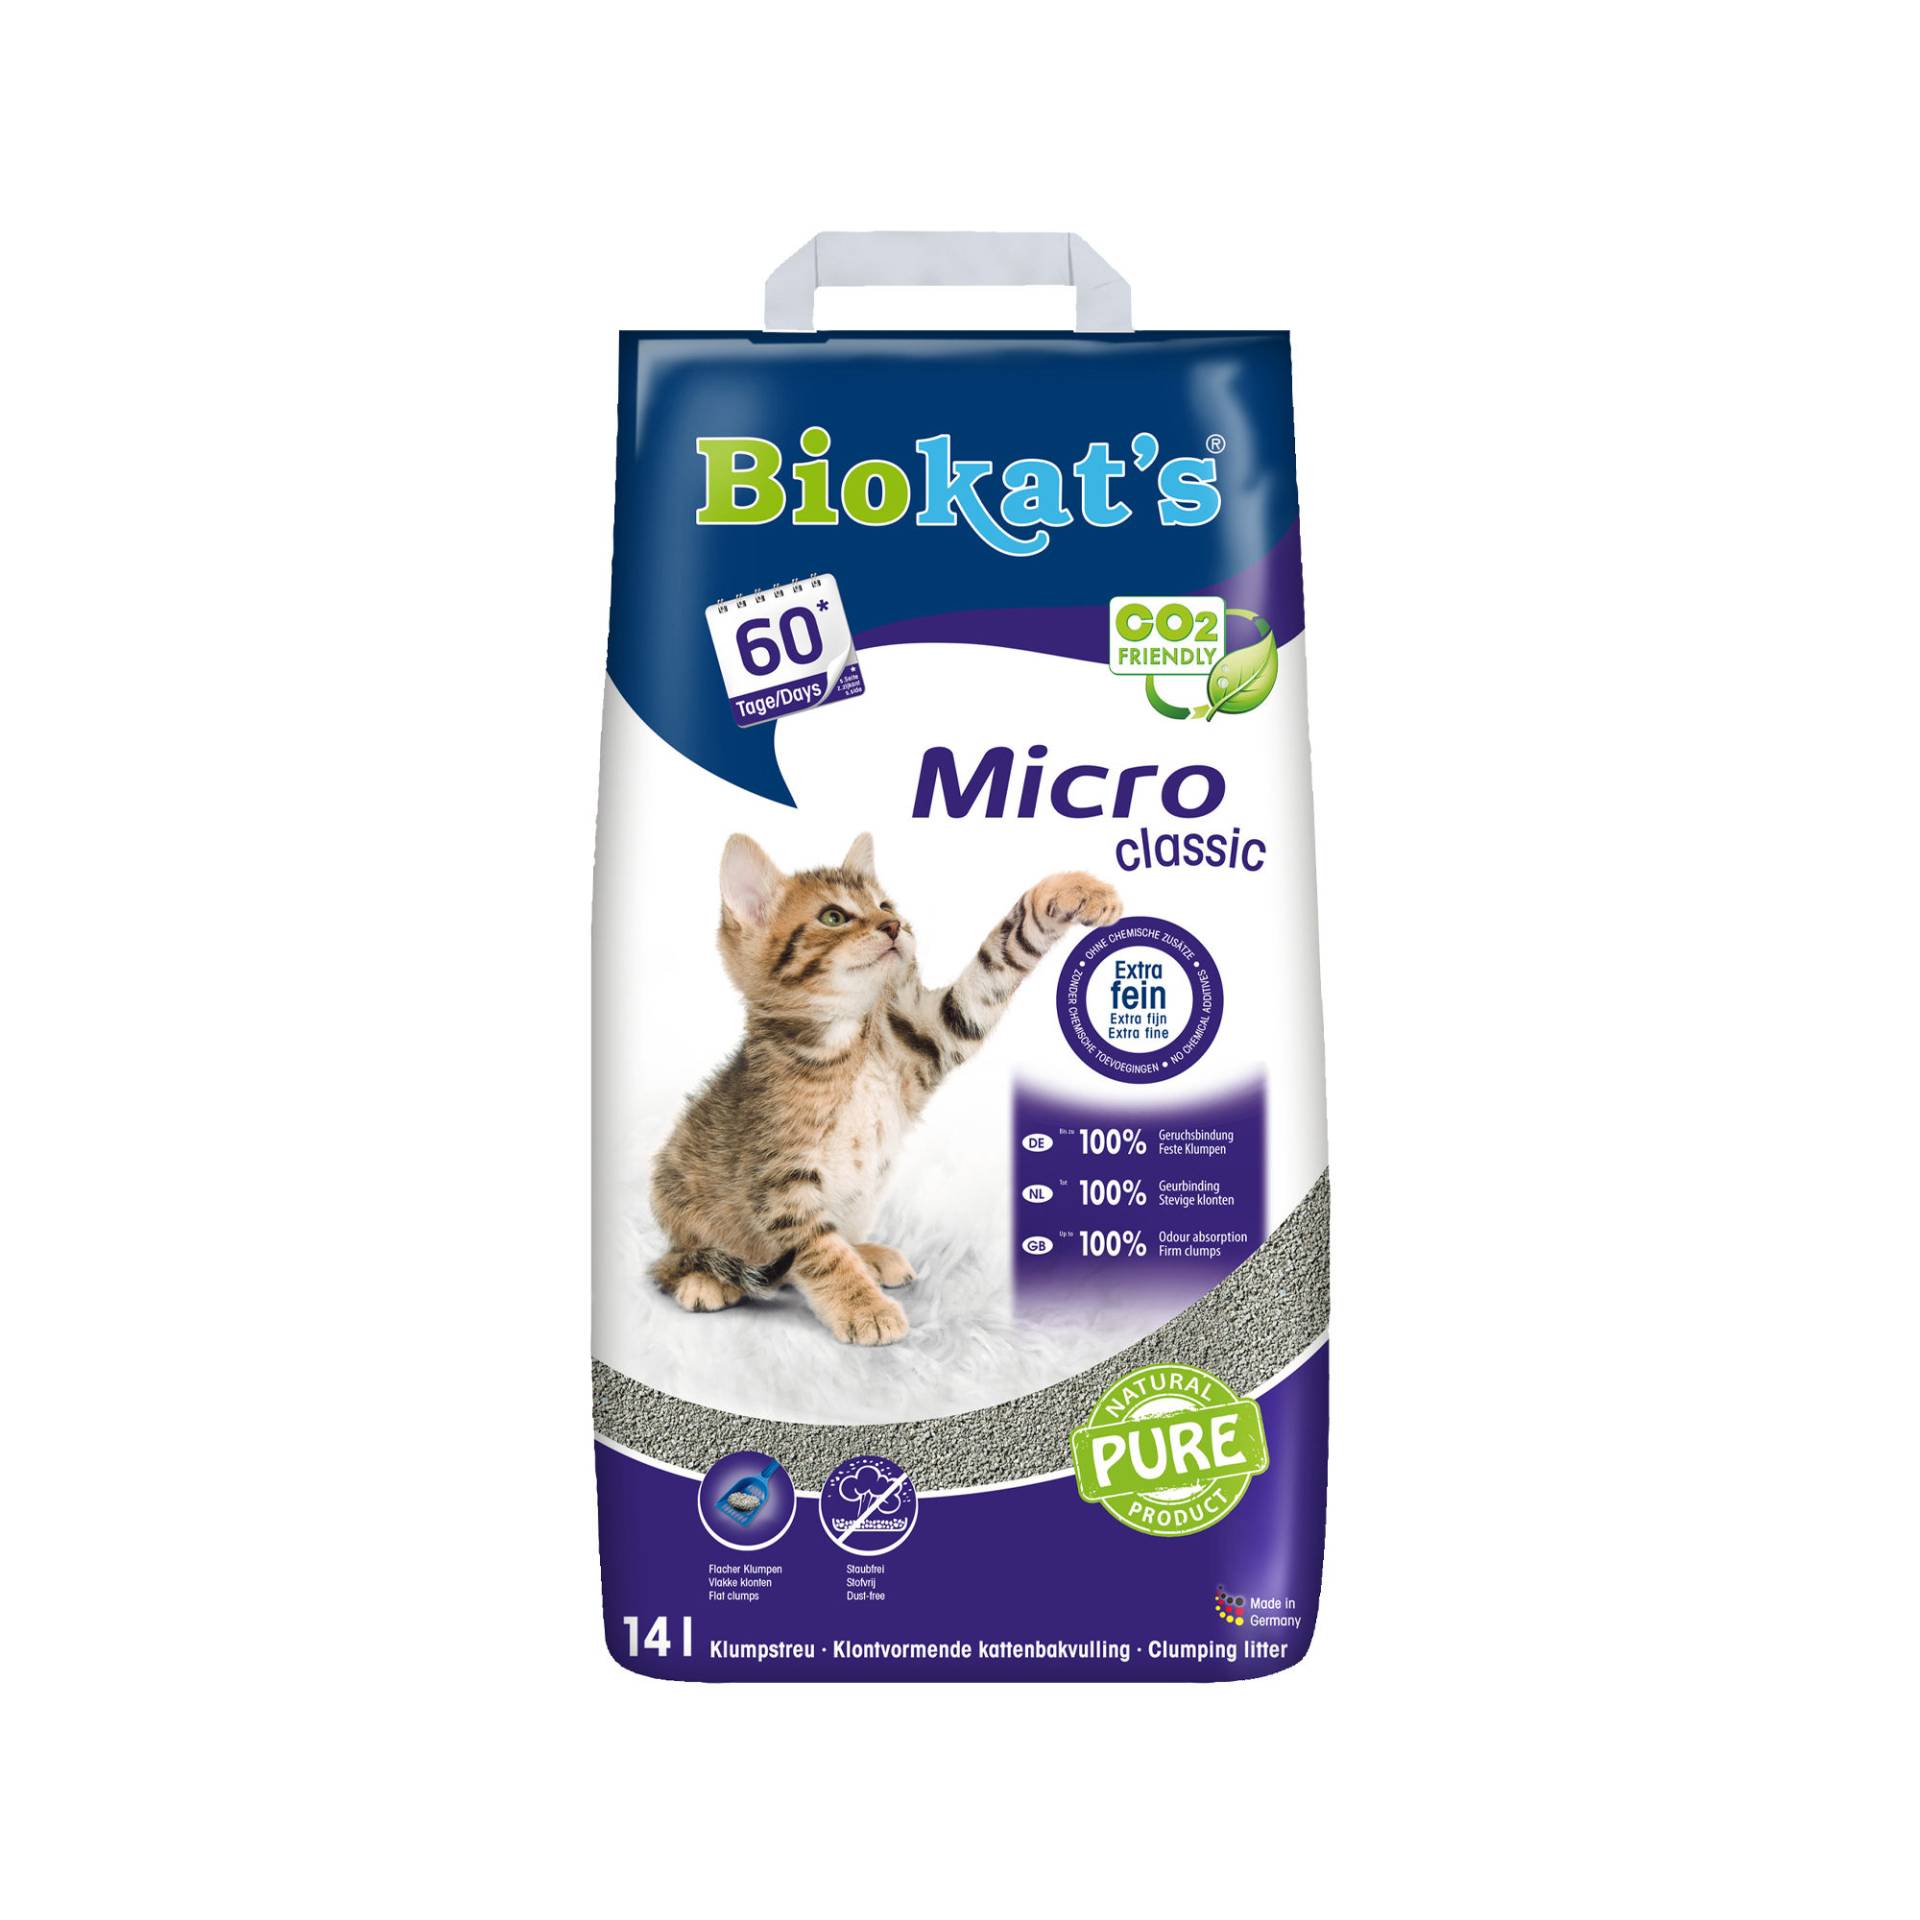 Biokat's Micro (Fresh) von Biokat